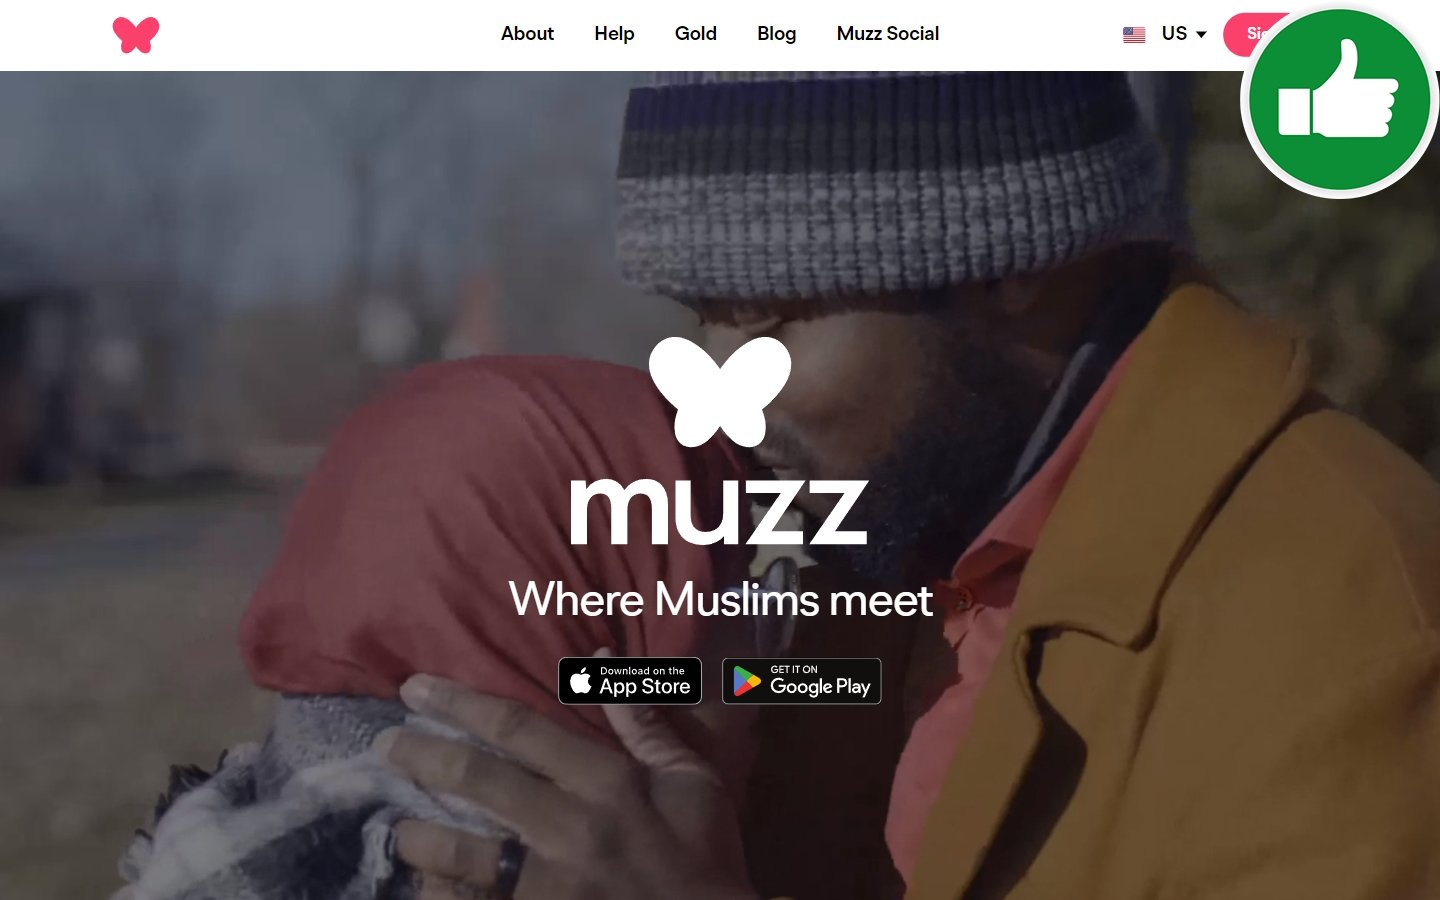 Review Muzz.com Scam